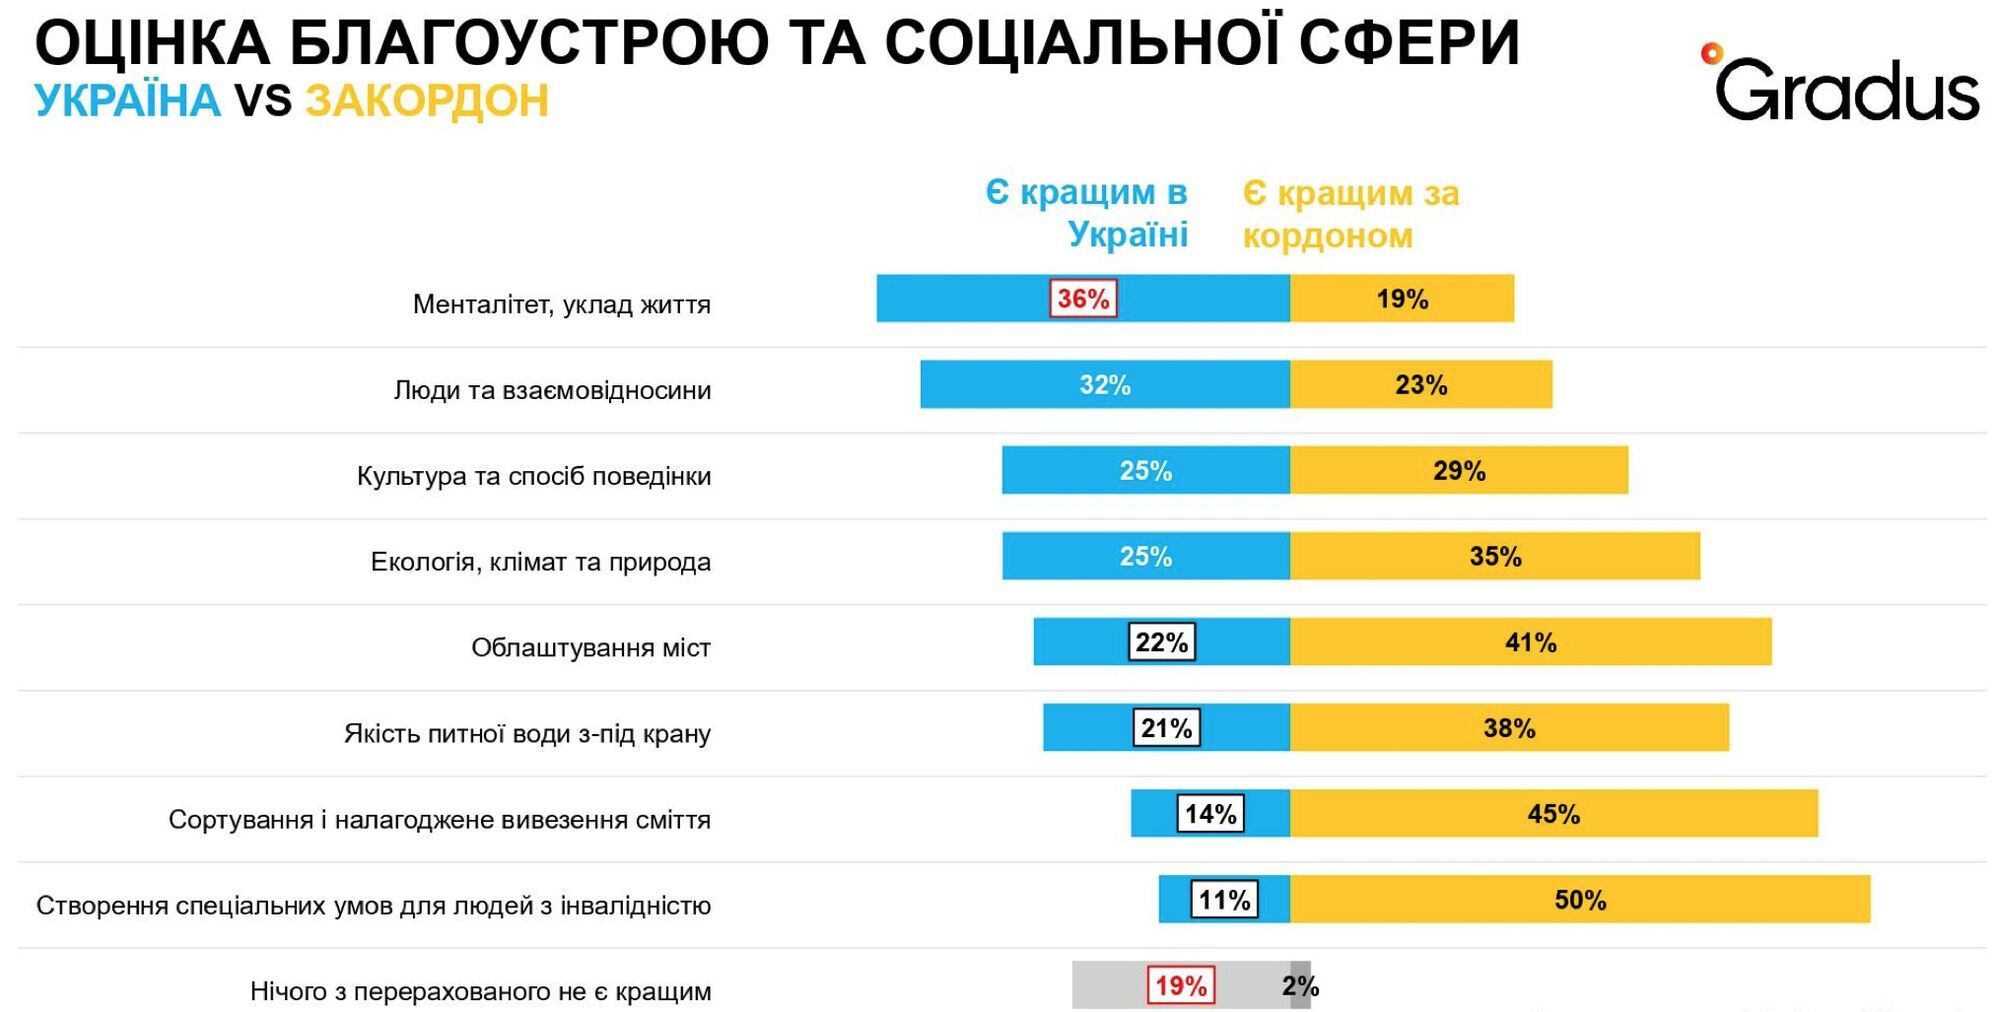 Українці віддають перевагу більш звичним способам взаємовідносин